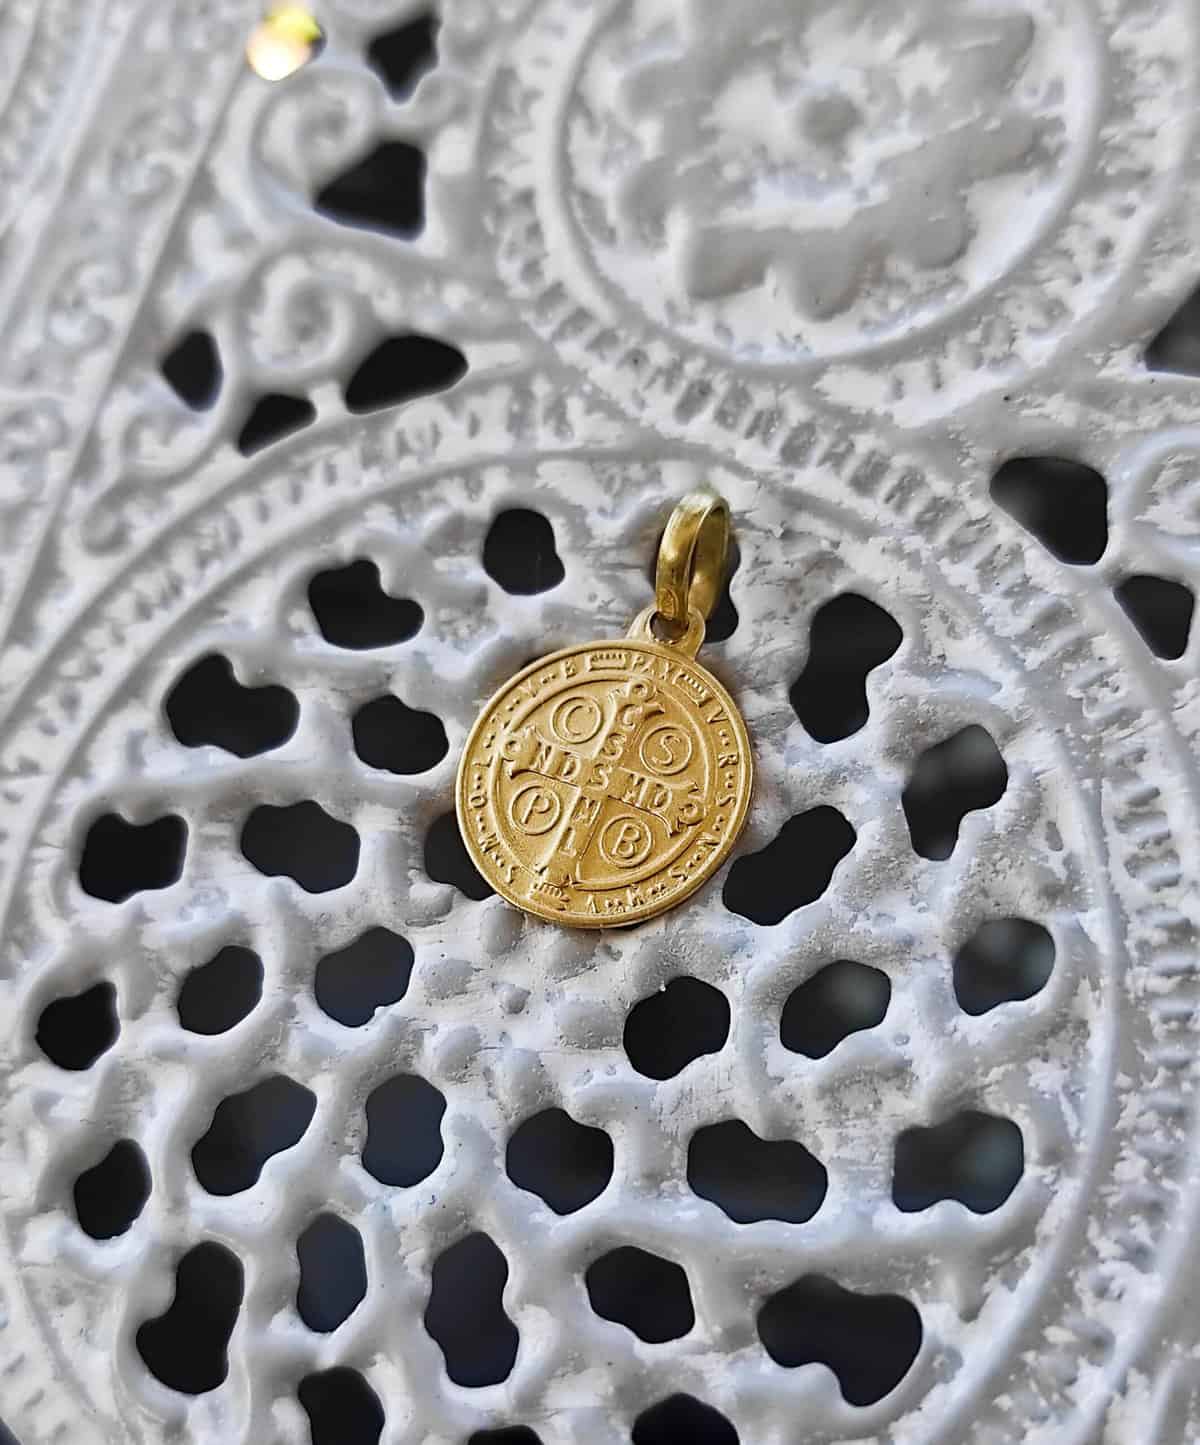 Medalla San Benito Monje 18mm Oro